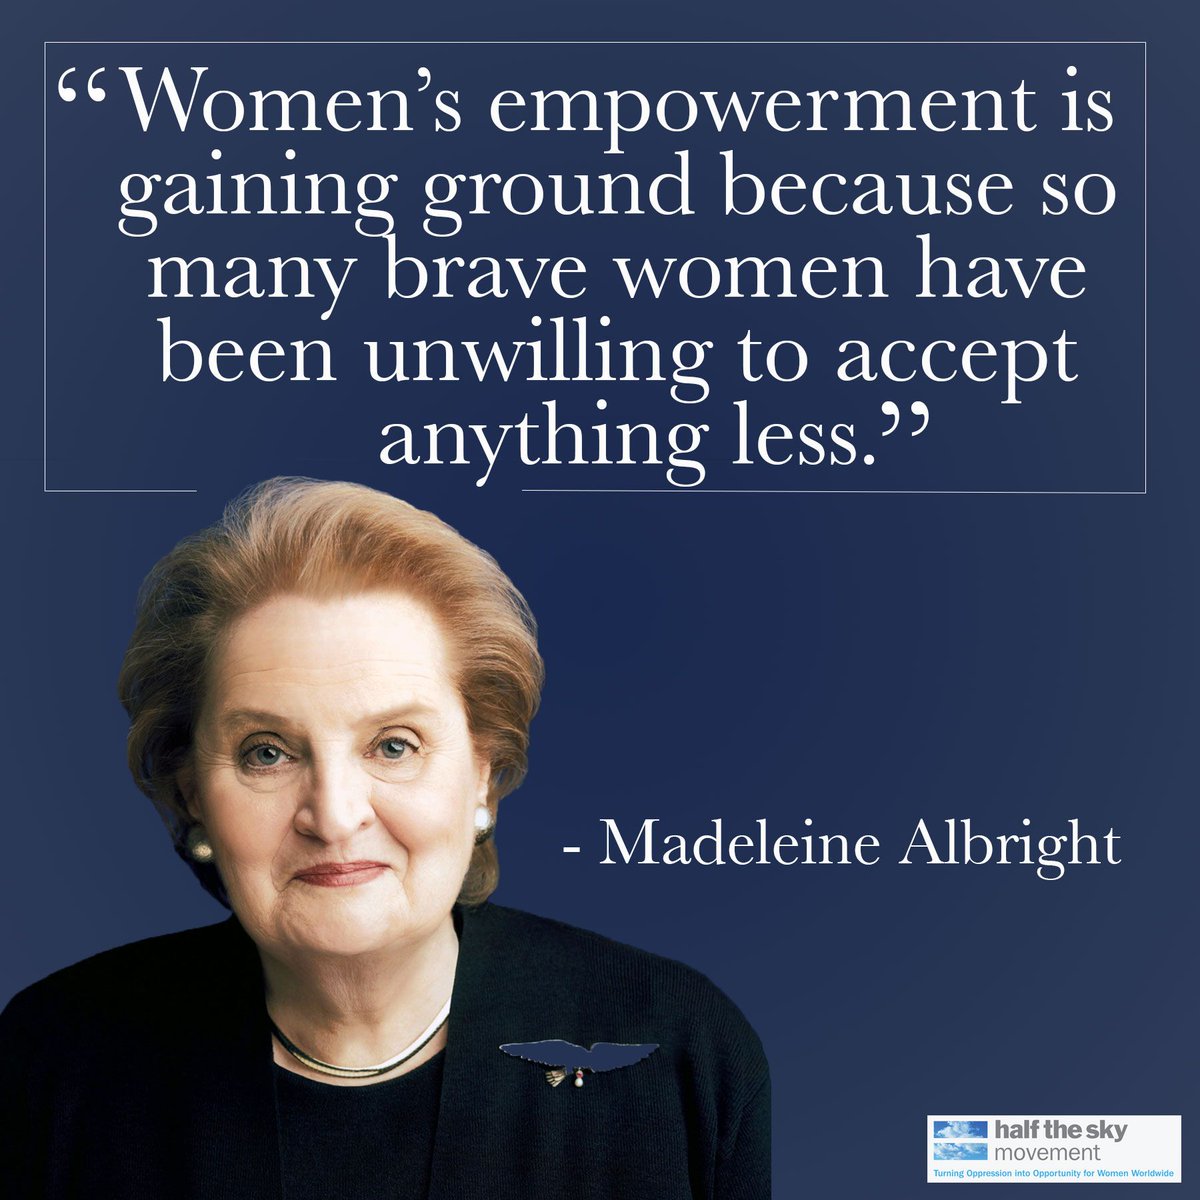 Inspiration forever. 🖤❤️🌹
#MadeleineAlbright